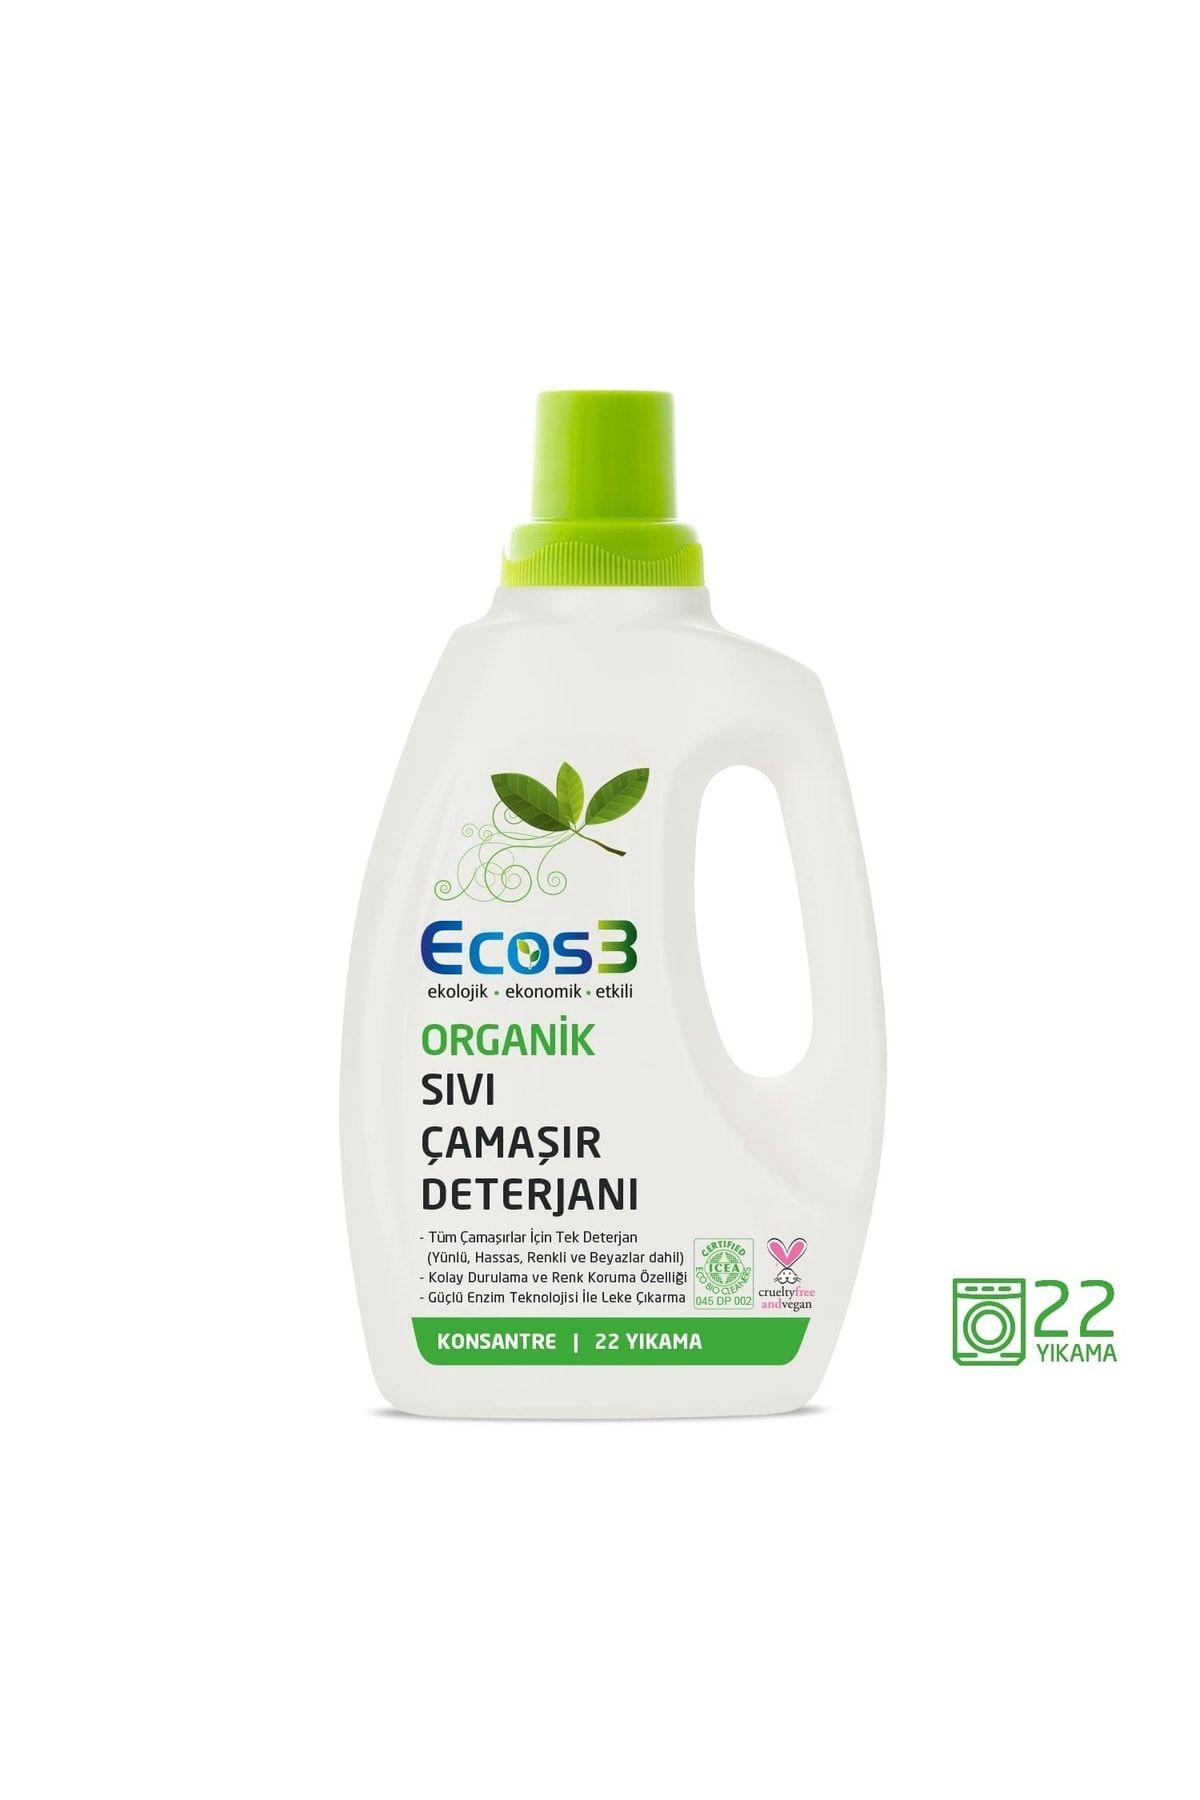 Ecos3 Vegan Organik Konsantre Sıvı Çamaşır Deterjanı 750 Ml -22 Yıkama